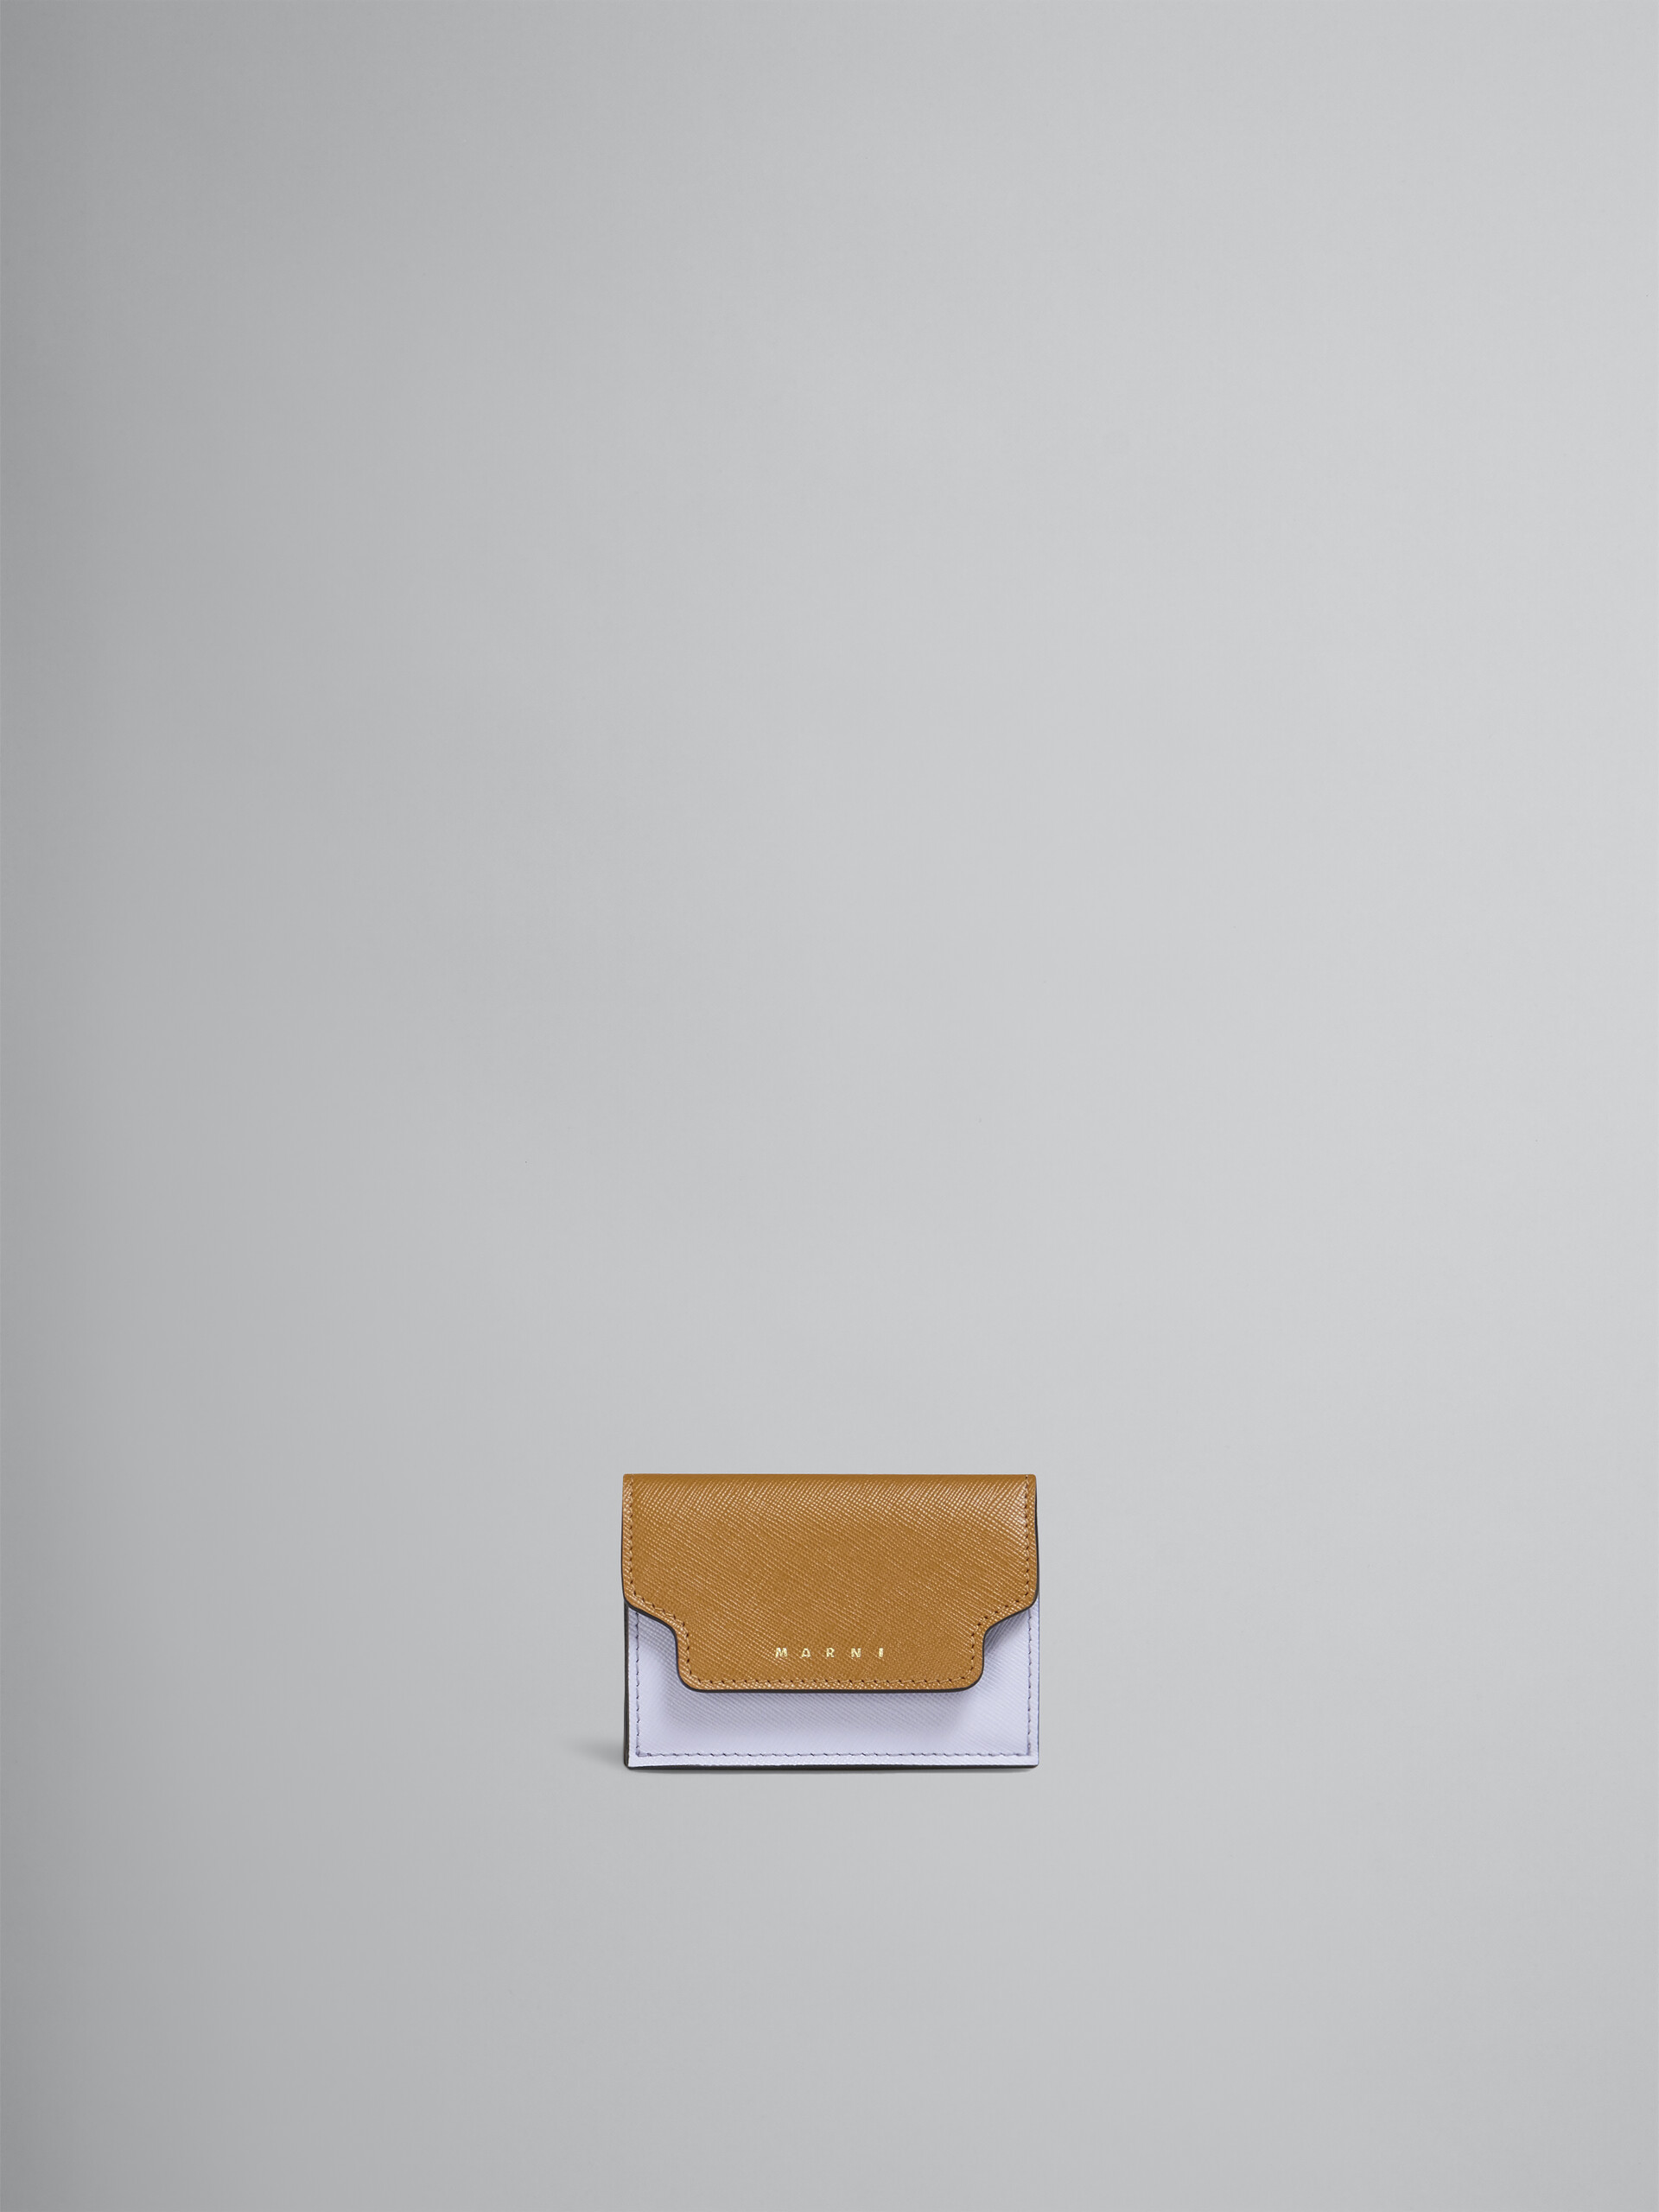 Portafoglio tri-fold in saffiano marrone lilla e nero - Portafogli - Image 1